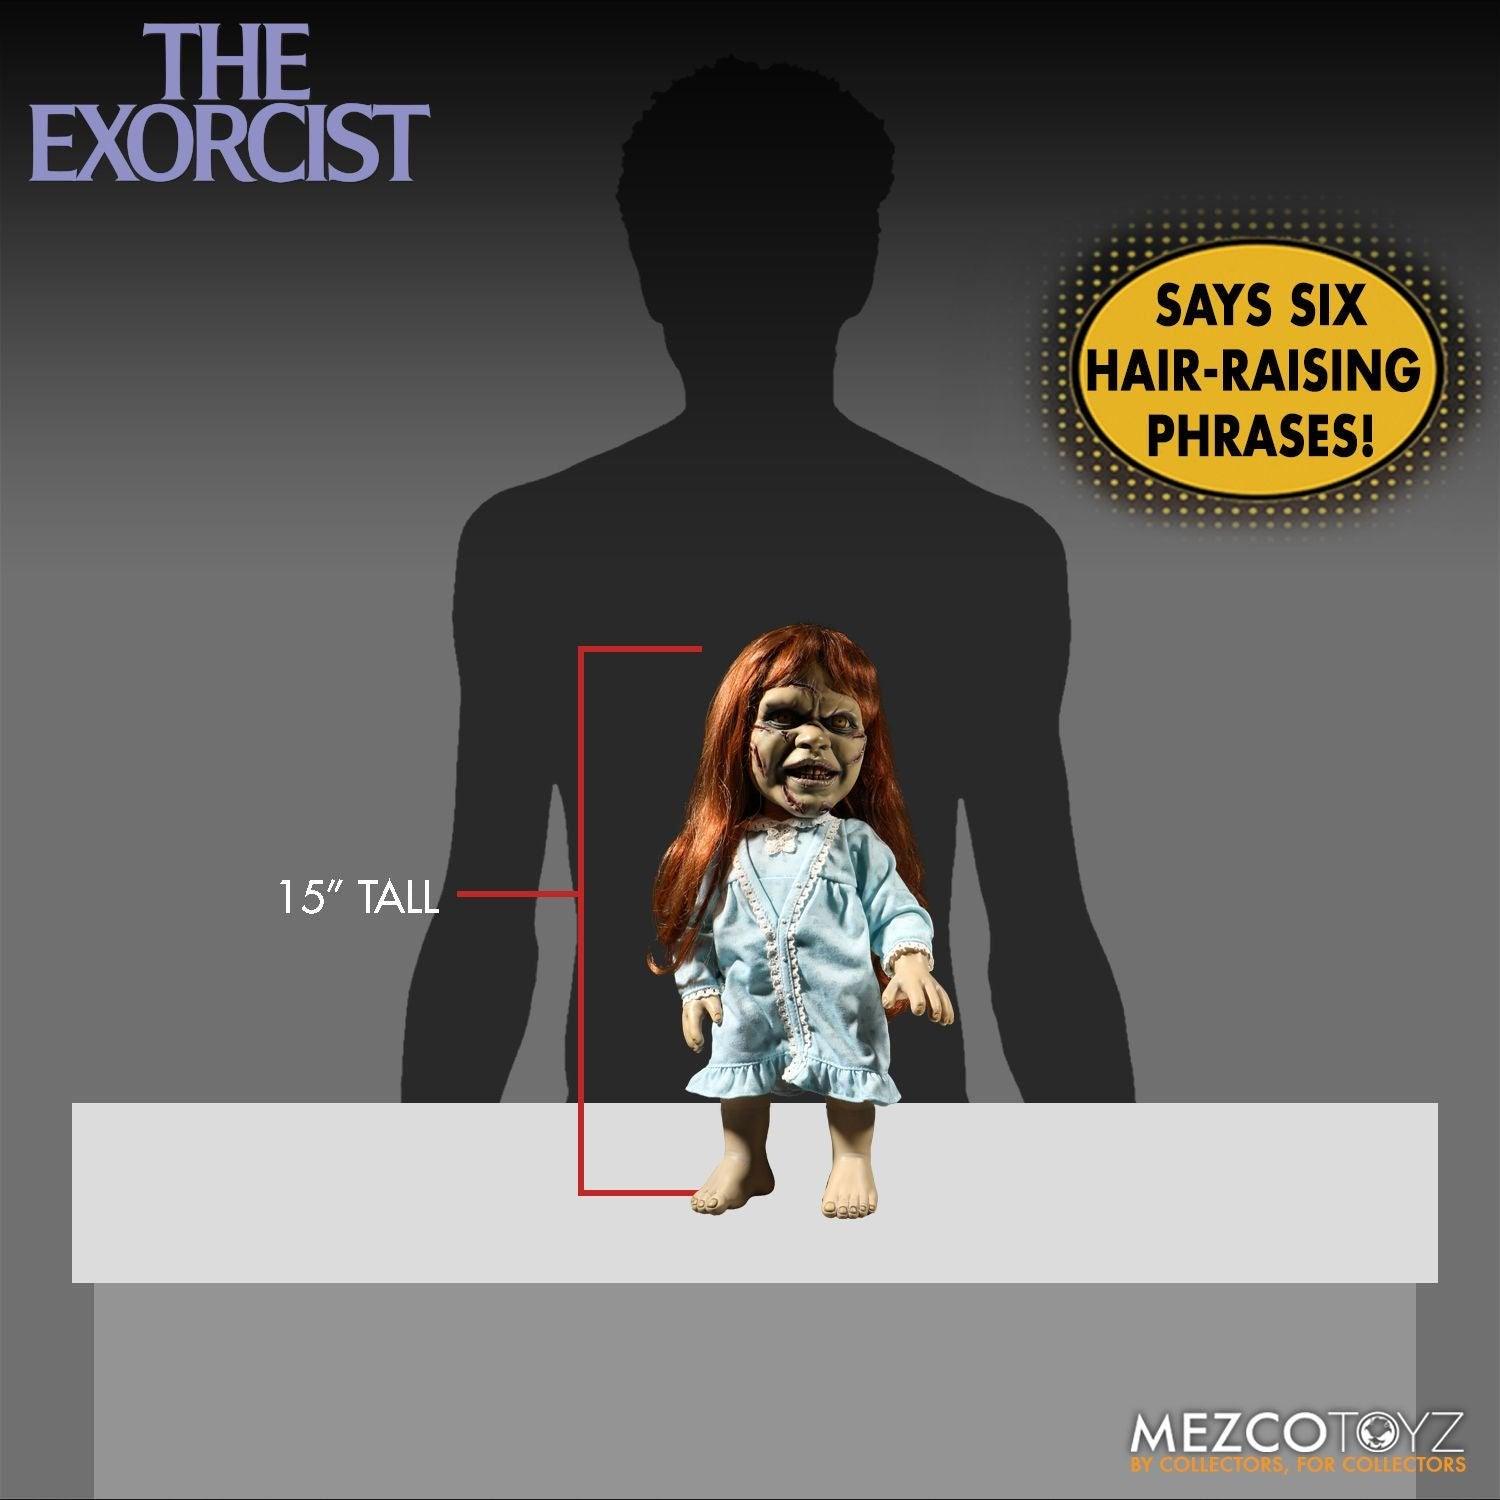 The Exorcist - Regan 15" Mega Scale Figure with Sound Action figures by Mezco Toyz | Titan Pop Culture